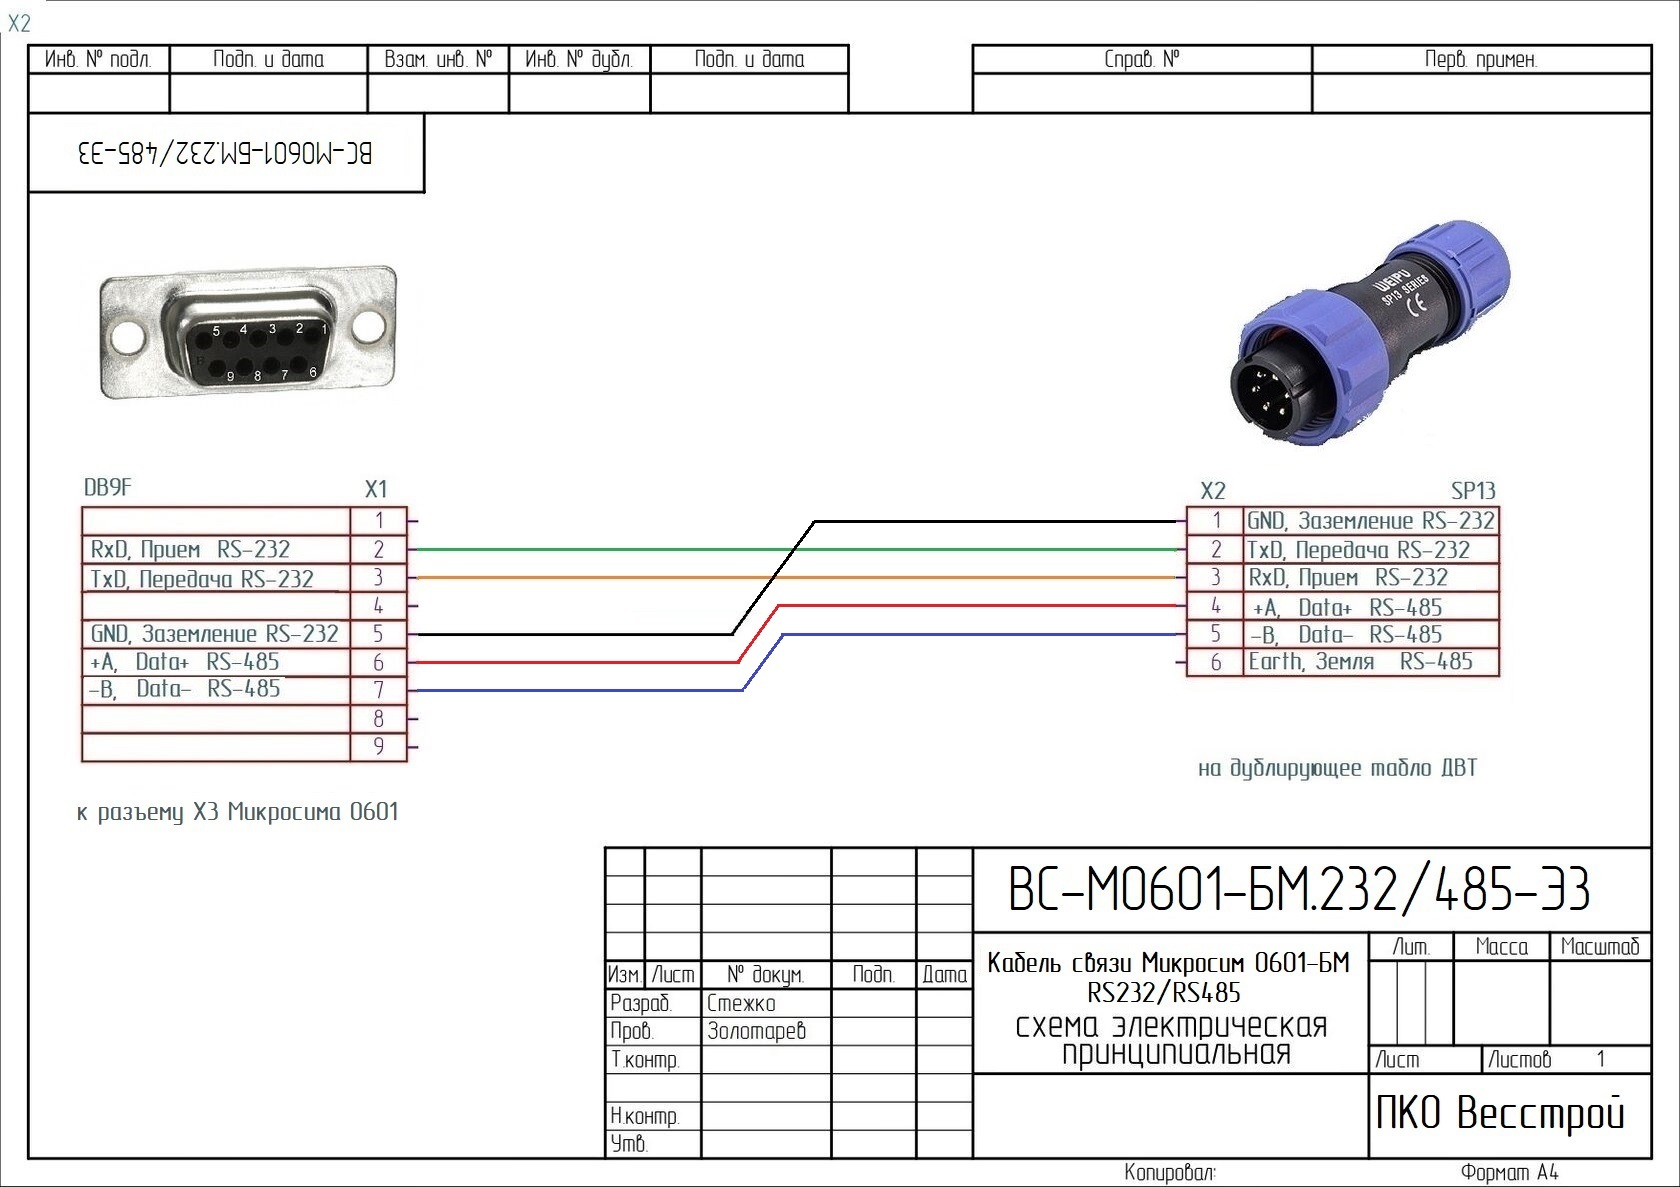 Схема кабеля для индикатора НВТ-9 и дублирующего табло